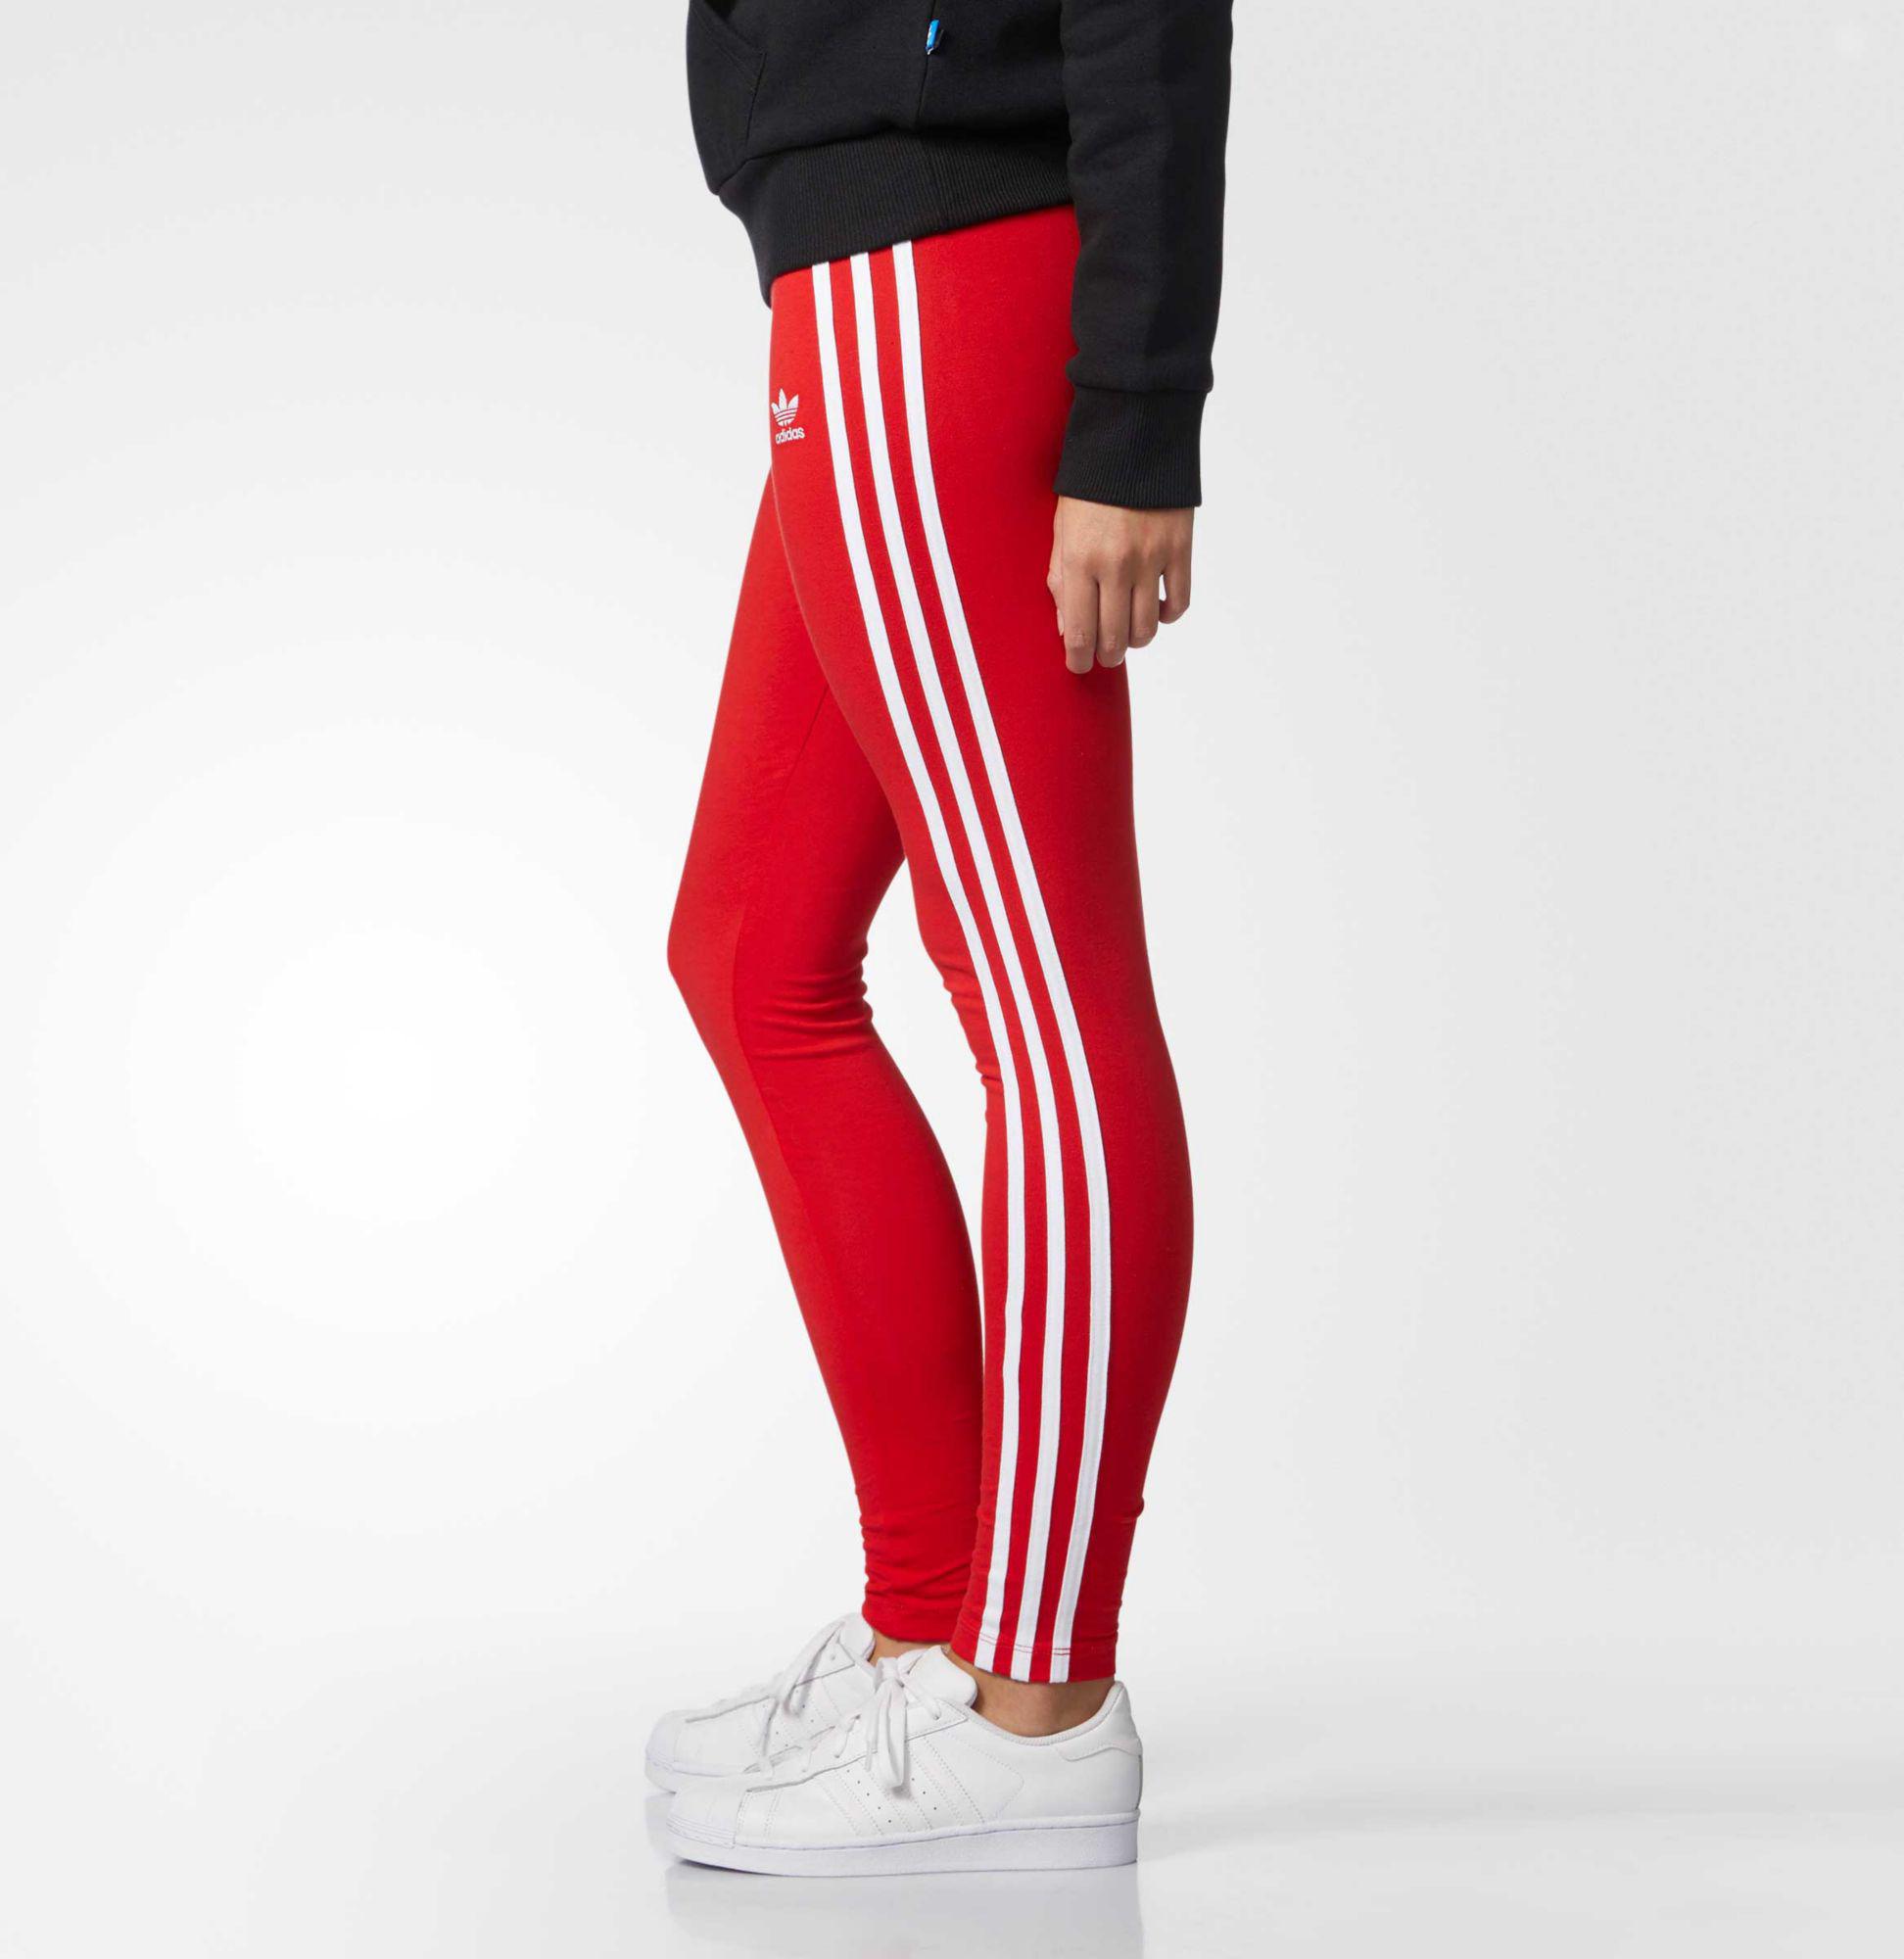 adidas Cotton Originals 3-stripes Leggings in Vivid Red (Red) - Lyst